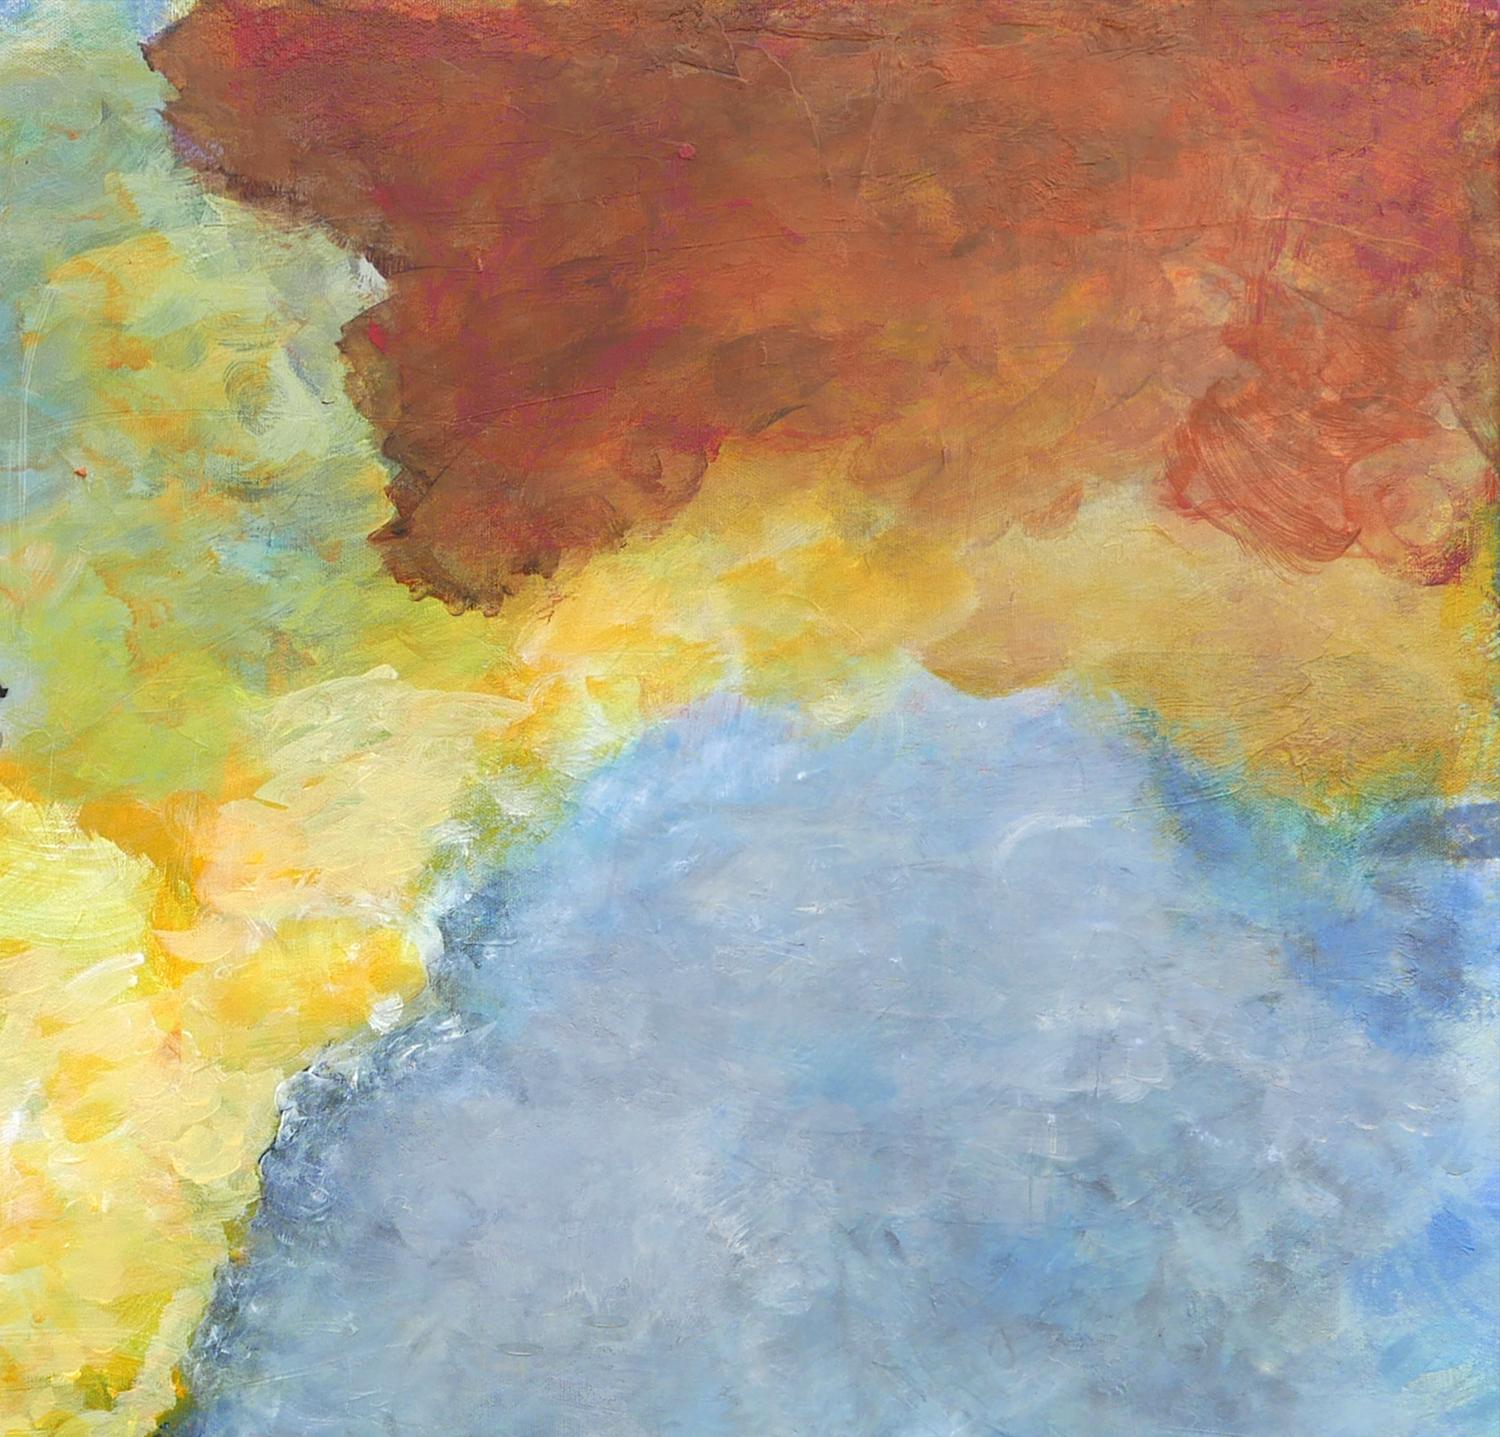 Peinture impressionniste abstraite de paysage rouge, bleu, jaune et vert de l'artiste Marthann Masterson de Houston, TX. L'œuvre représente un paysage sombre d'avion avec des cieux aux tons chauds. Signé par l'artiste en bas à droite. Non encadré